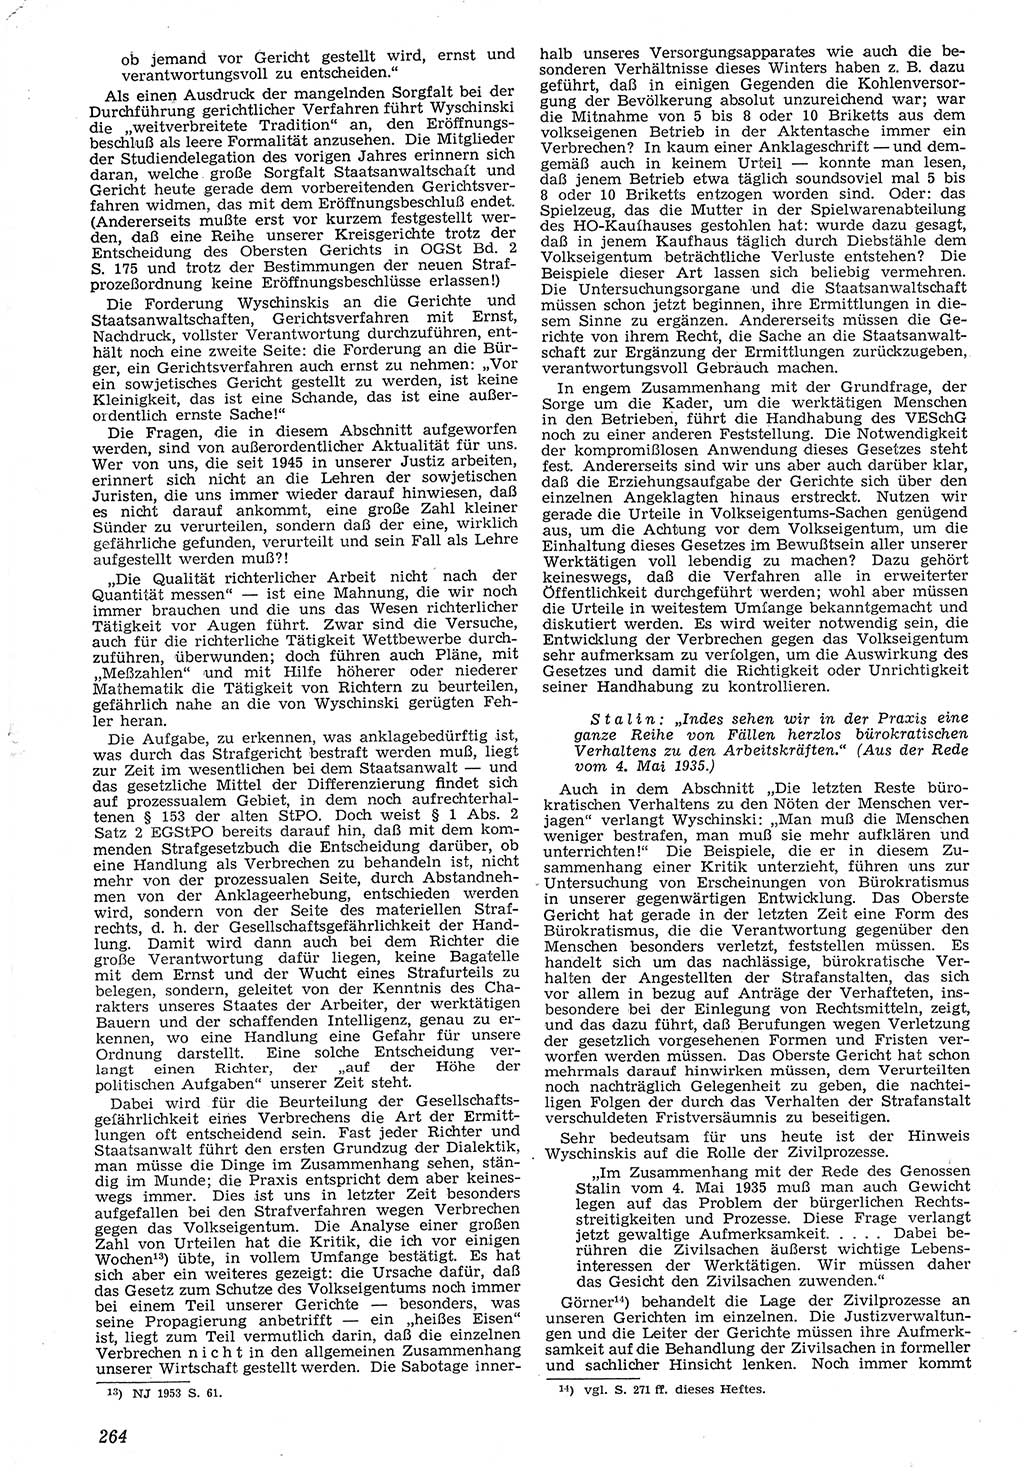 Neue Justiz (NJ), Zeitschrift für Recht und Rechtswissenschaft [Deutsche Demokratische Republik (DDR)], 7. Jahrgang 1953, Seite 264 (NJ DDR 1953, S. 264)